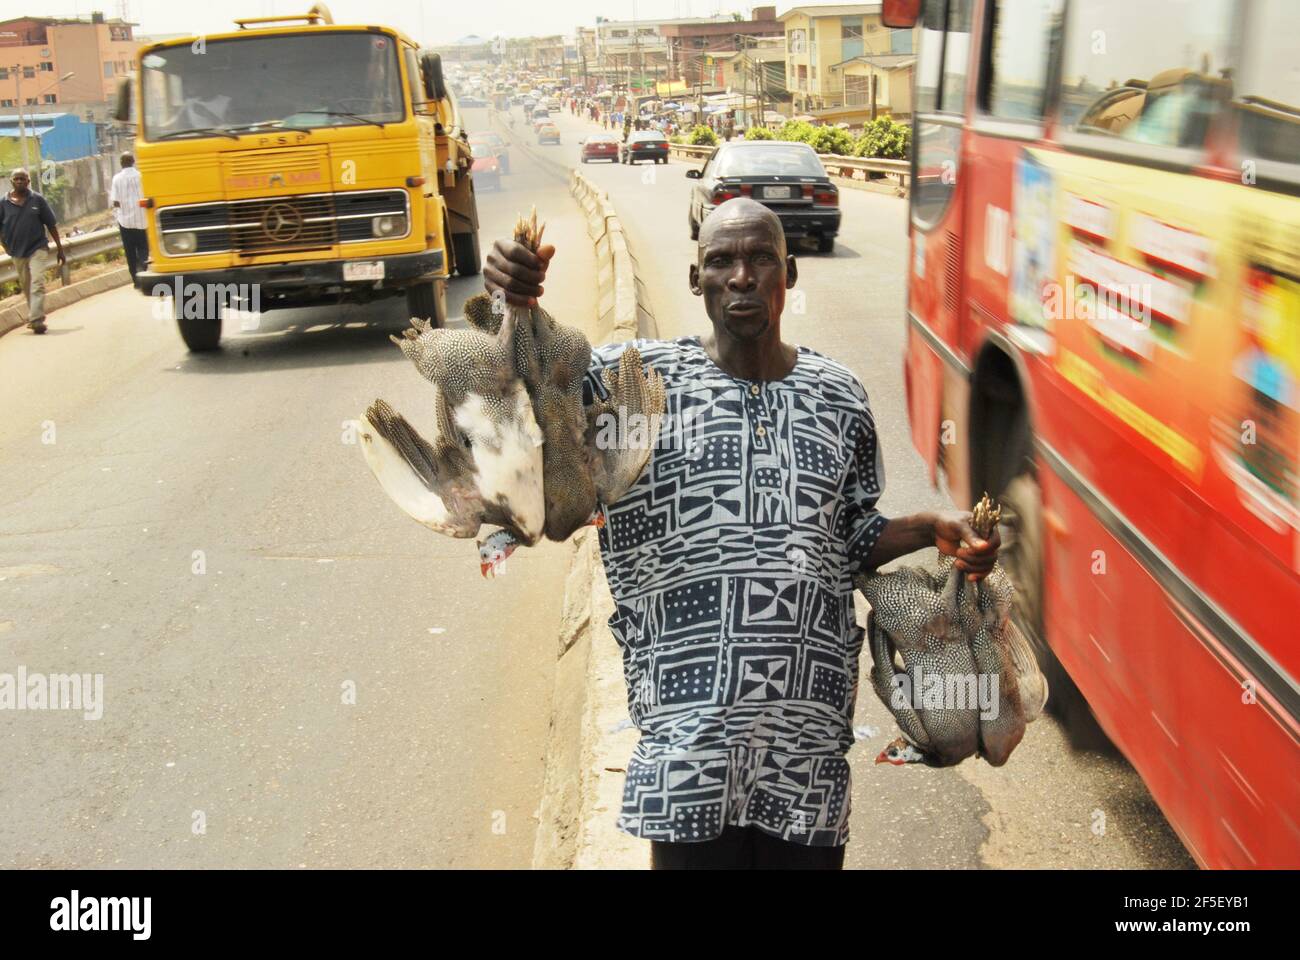 15. Lagos Metro: A man selling guineafowls along Lagos Road, Nigeria. Stock Photo